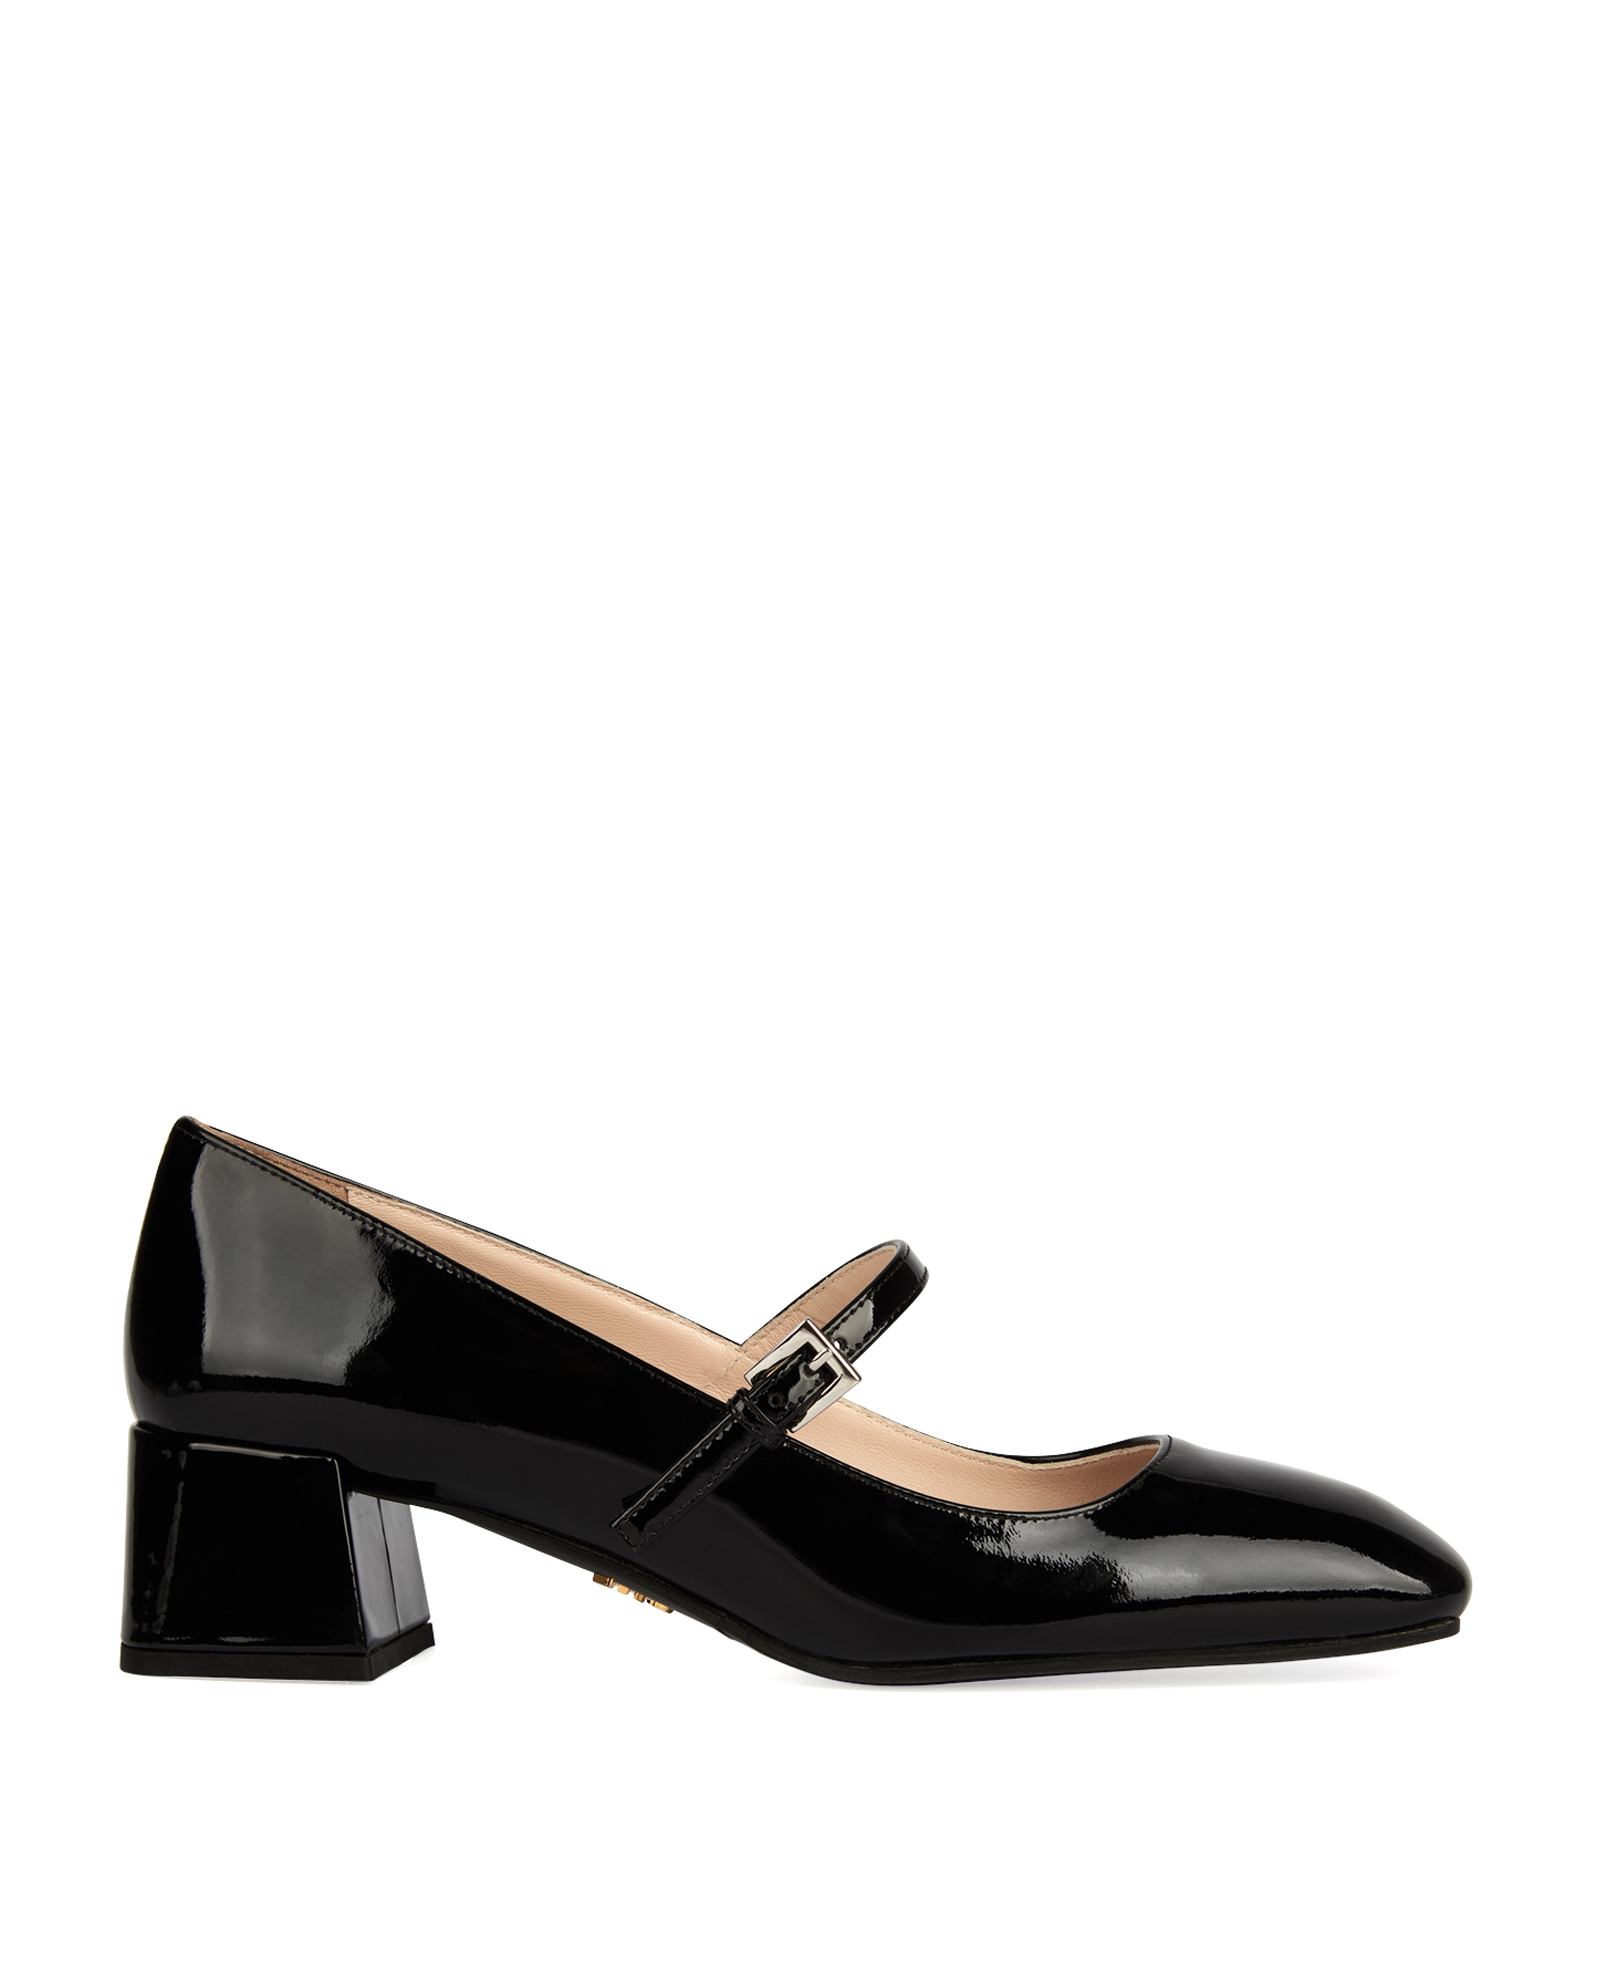 Prada Square Toe Mary Jane Heels, Heels - Designer Exchange | Buy Sell ...